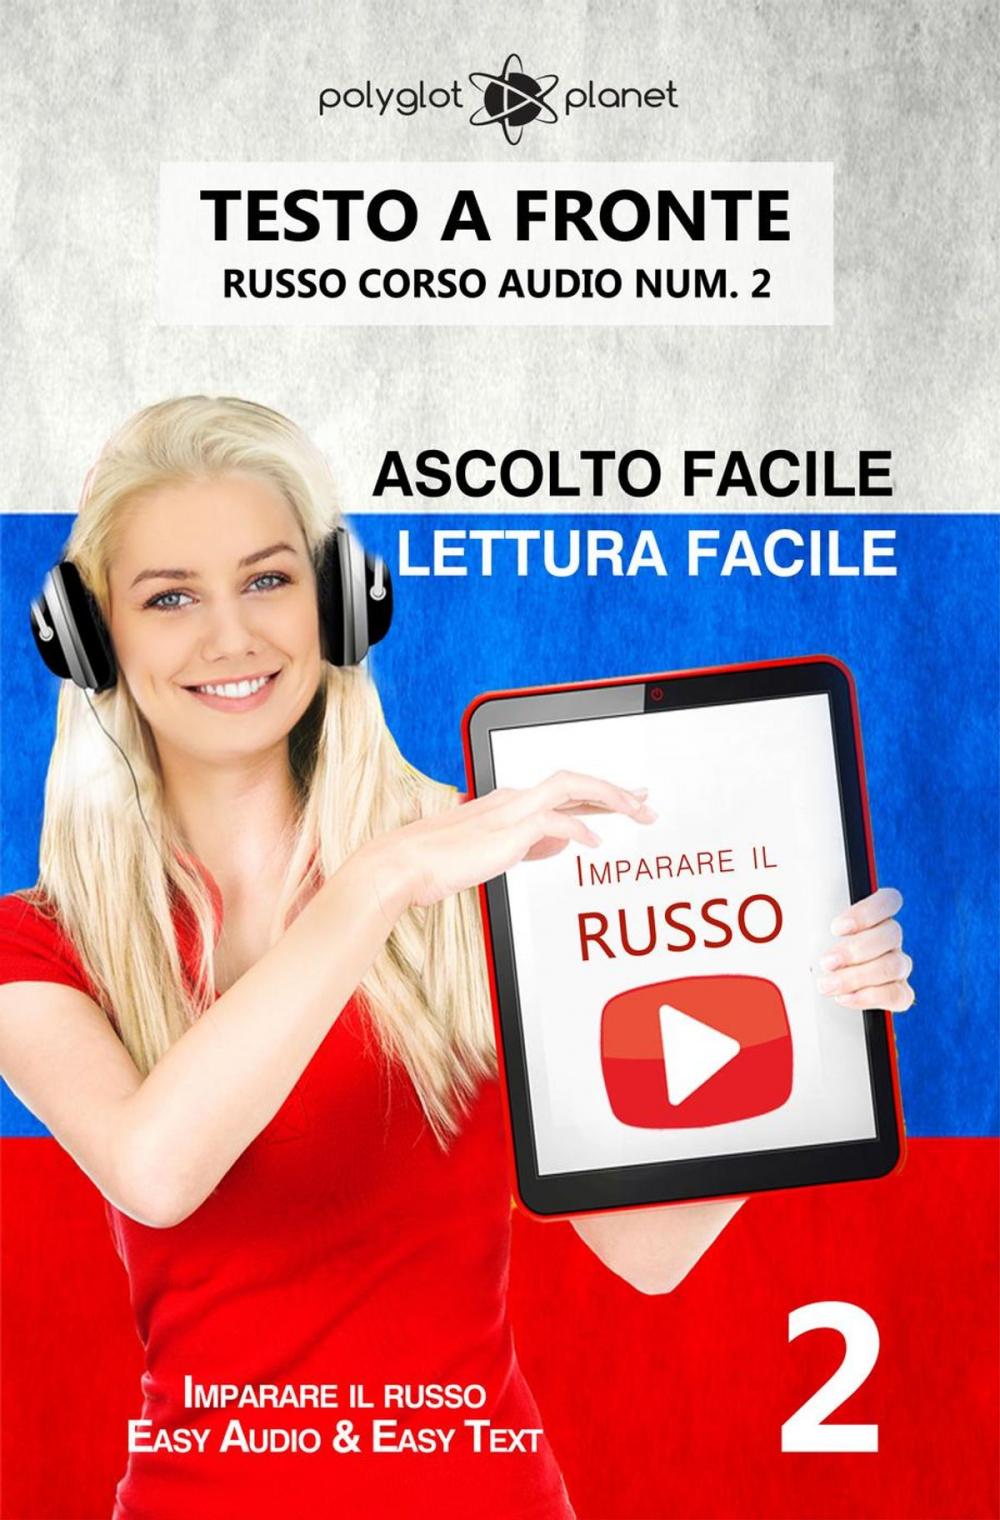 Big bigCover of Imparare il russo - Lettura facile | Ascolto facile | Testo a fronte Russo corso audio num. 2